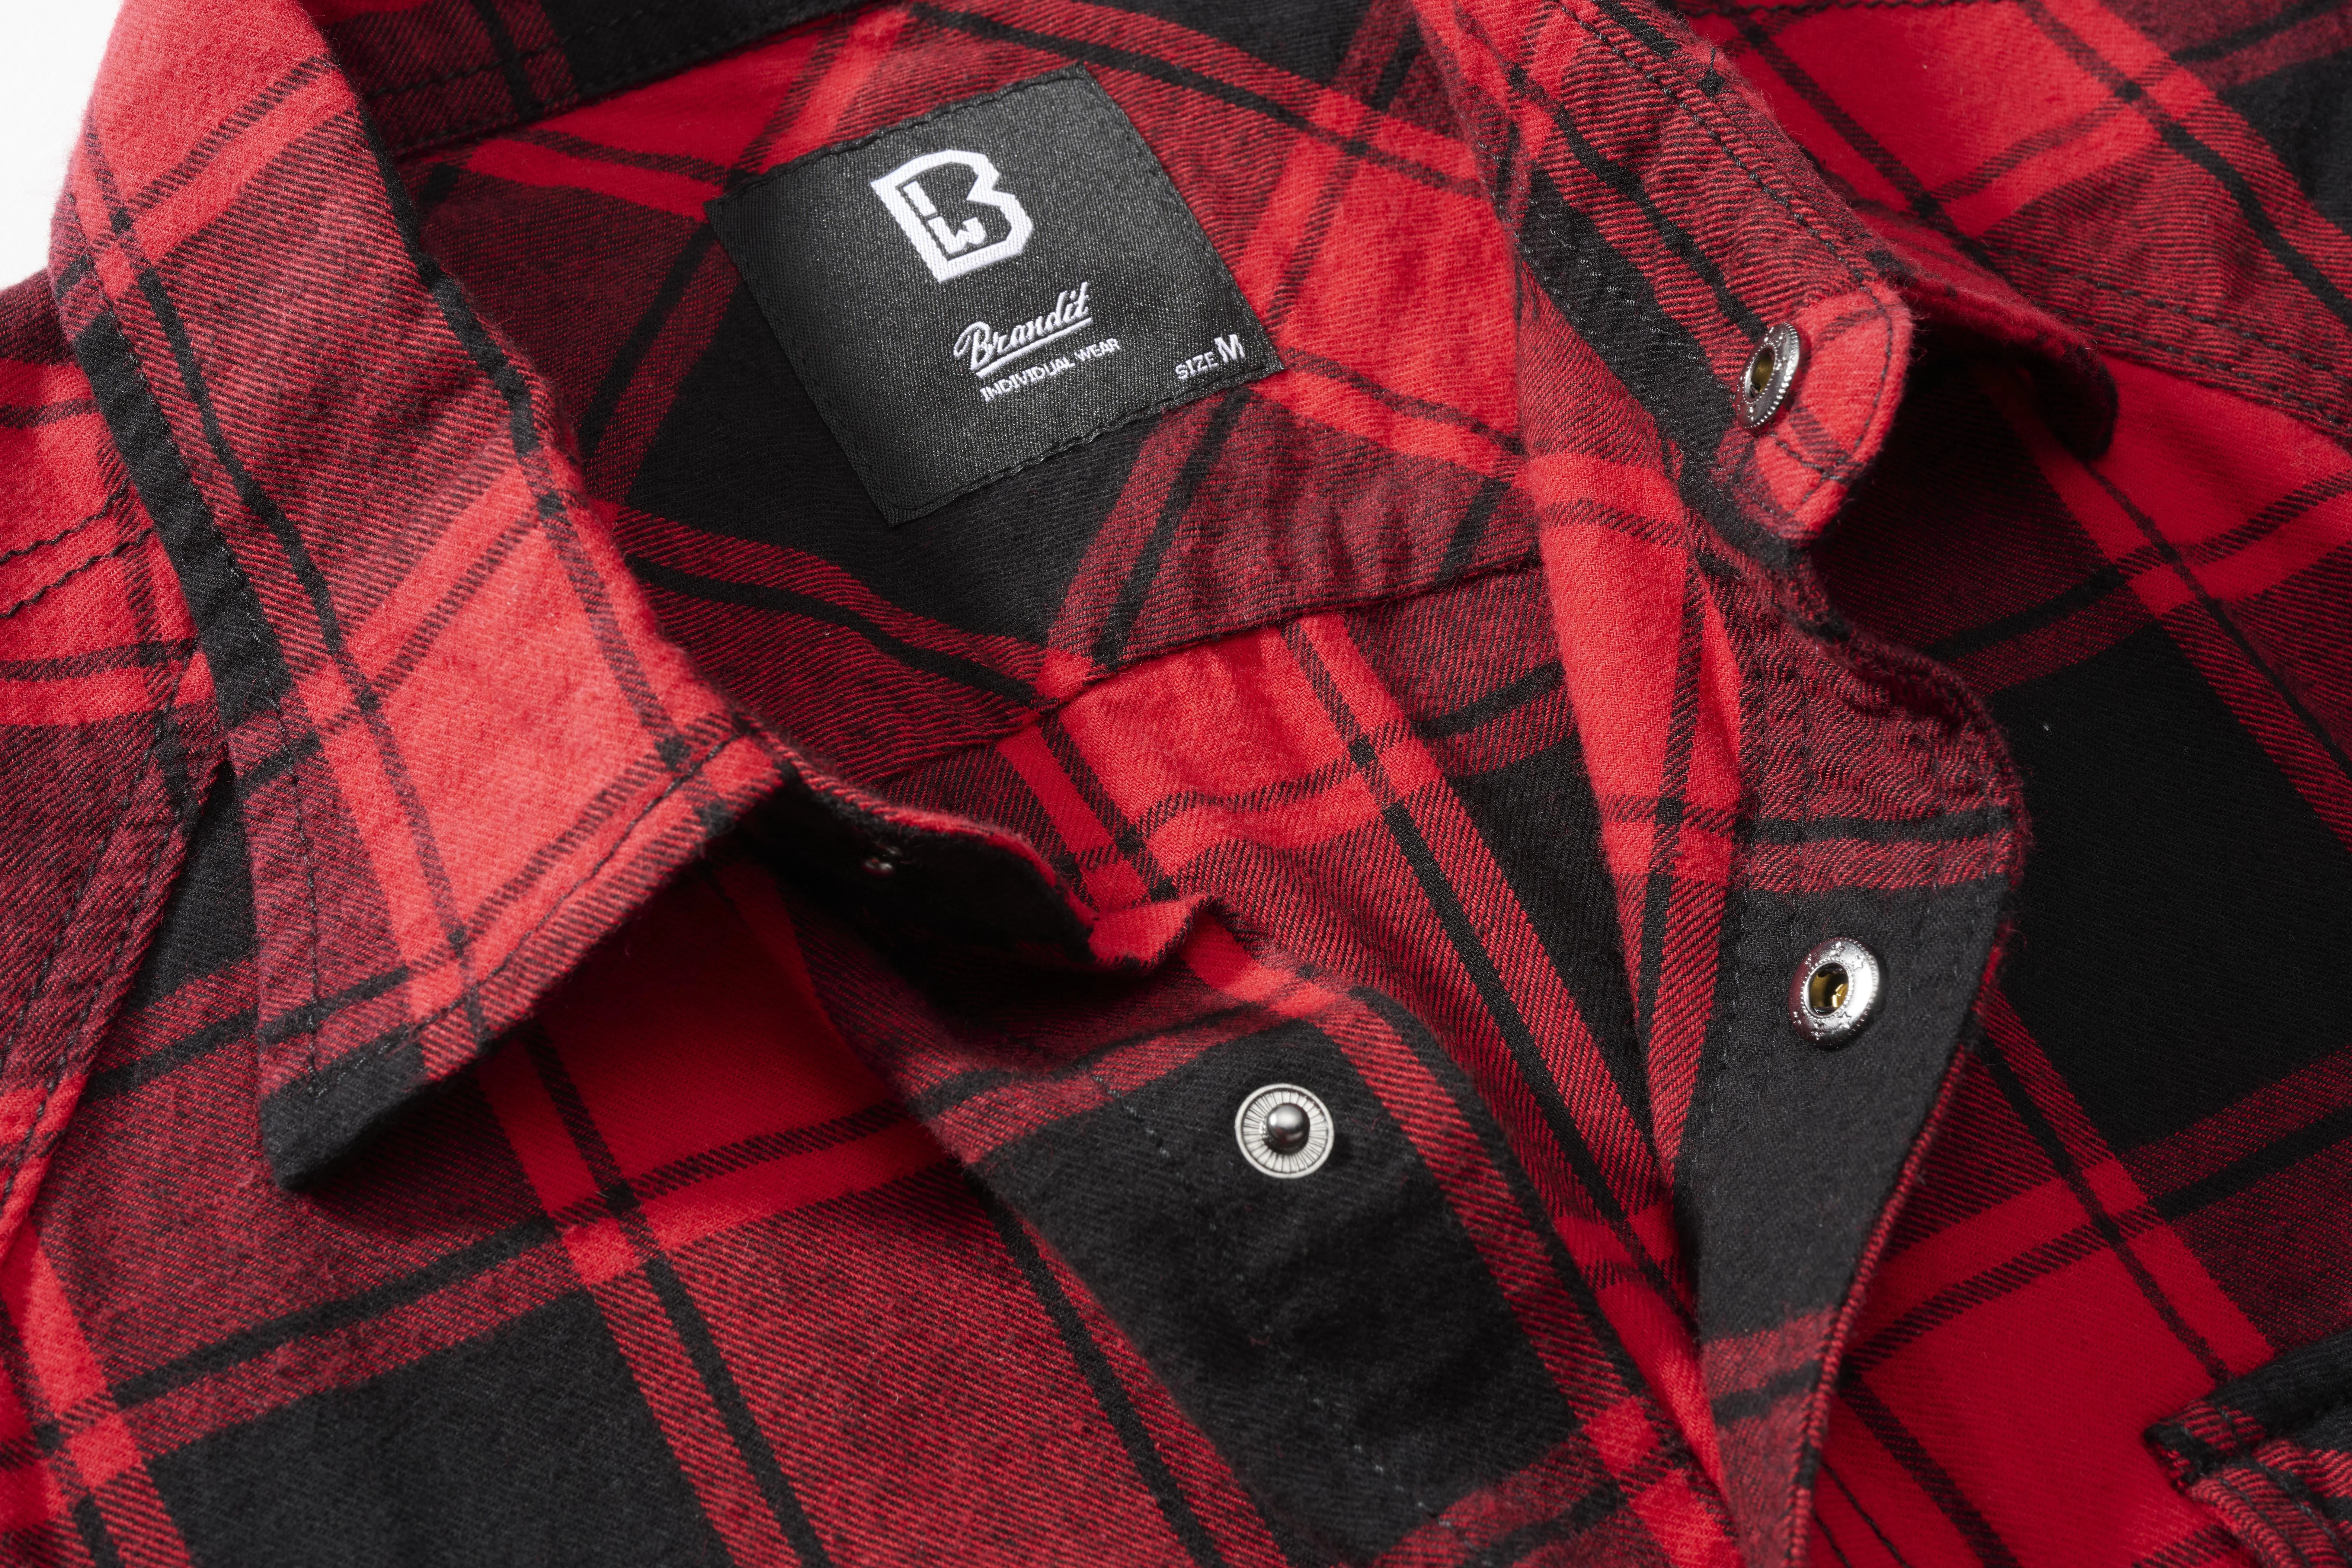 Brandit Checkshirt, Farbe rot/schwarz, Größe S